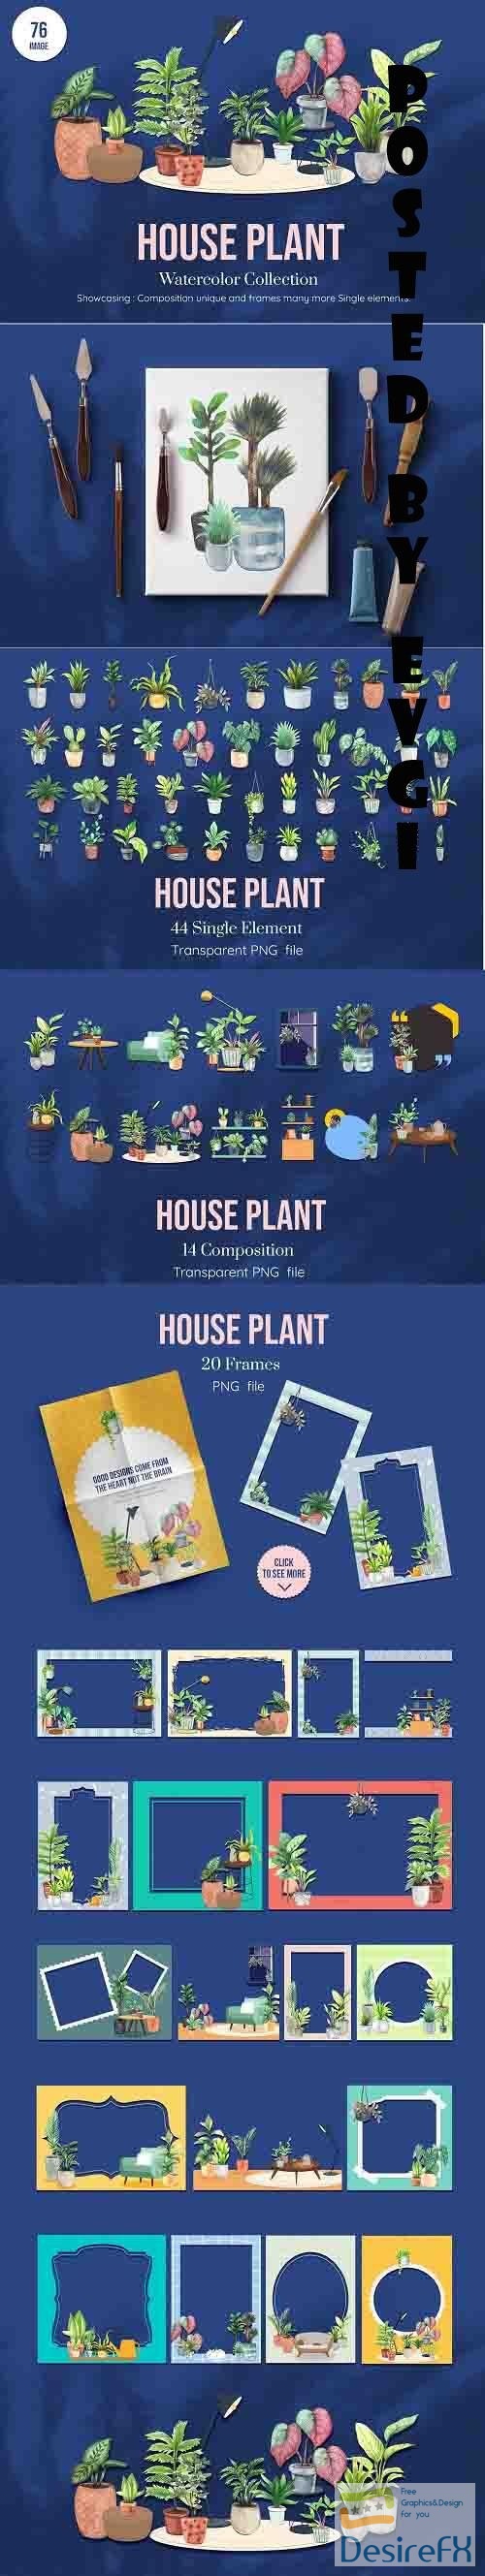 House Plants Watercolor set - 6221386